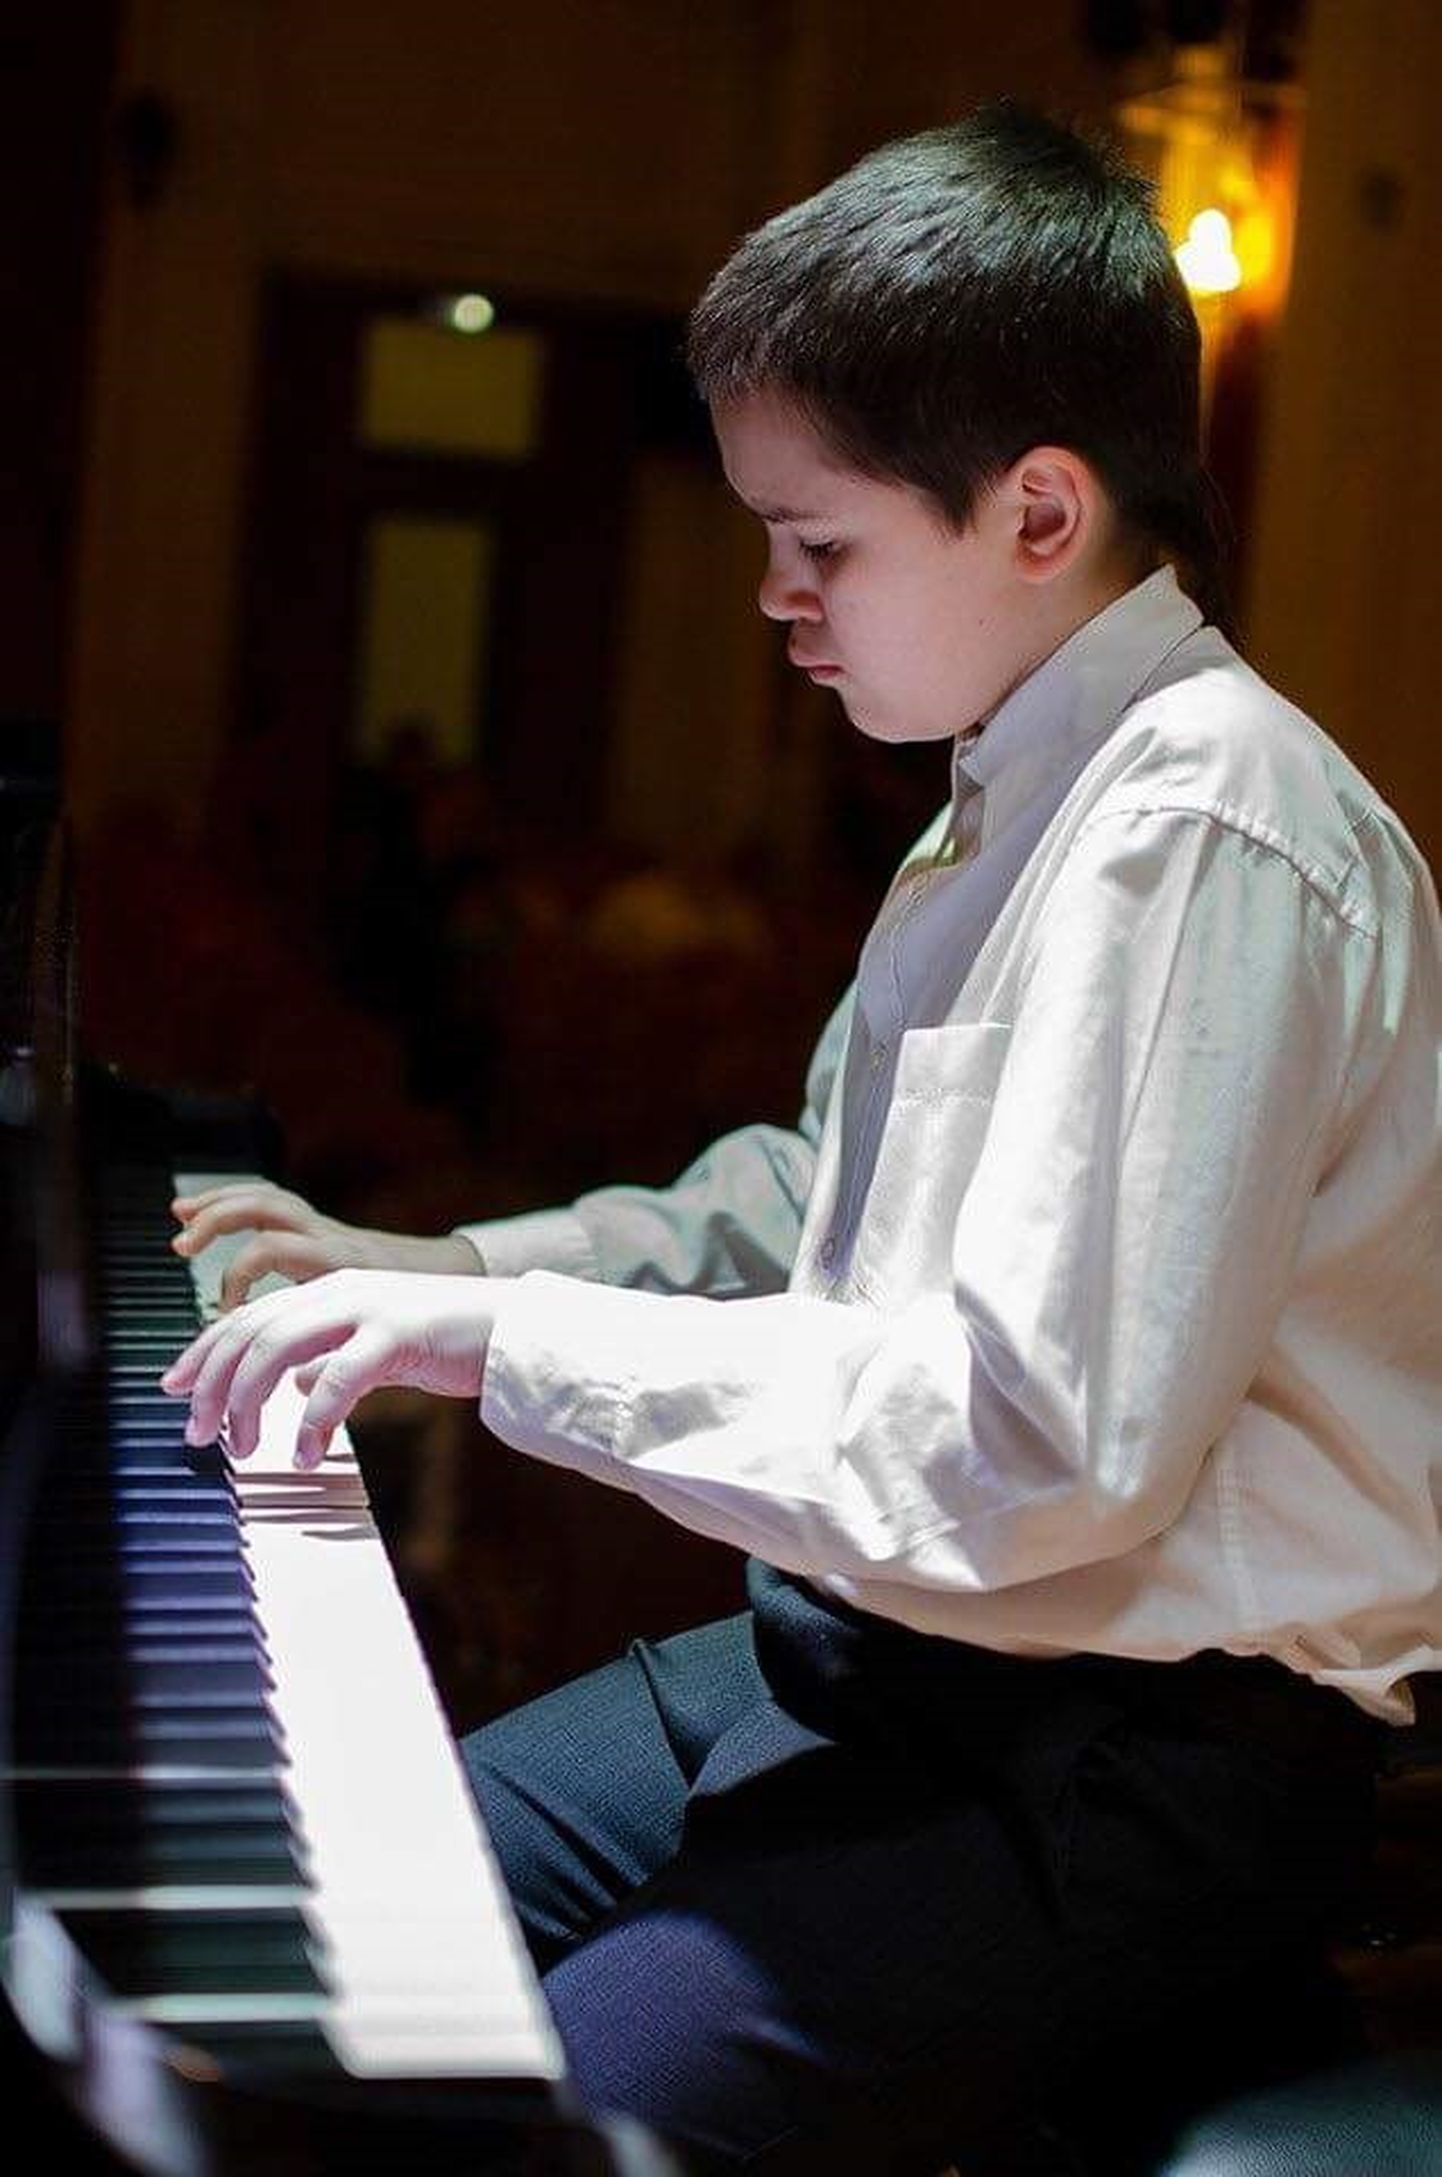 Музыкальное обрамление сказочного вечера обеспечит юный пианист Анатолий Богданов, который уже неоднократно доказал высокую степень своих талантов.